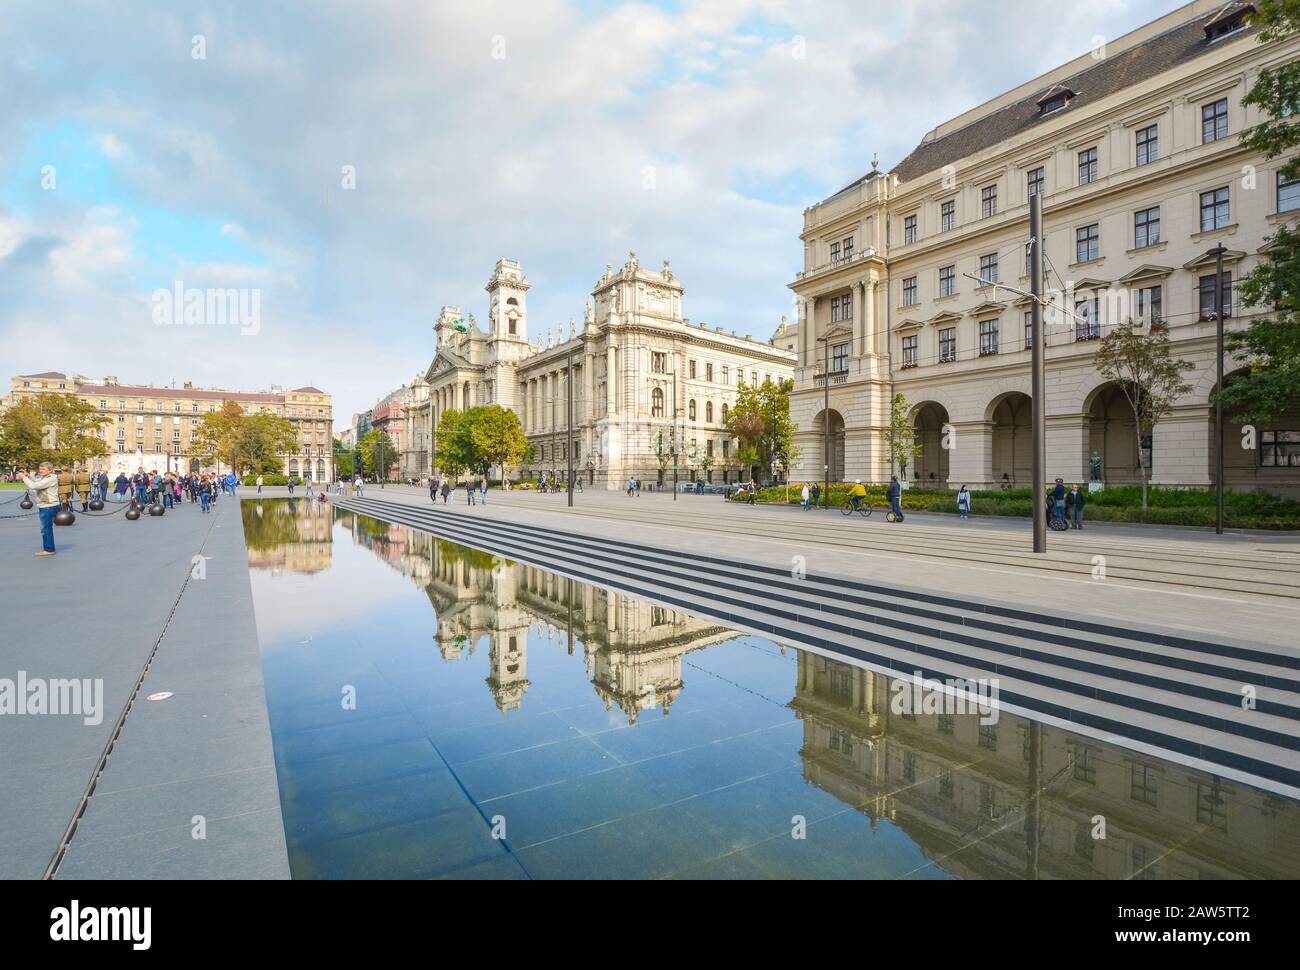 Les touristes se rendent sur la place du Parlement de Kossuth, car les bâtiments du gouvernement hongrois se reflètent dans la grande piscine réfléchissante de Budapest, en Hongrie. Banque D'Images